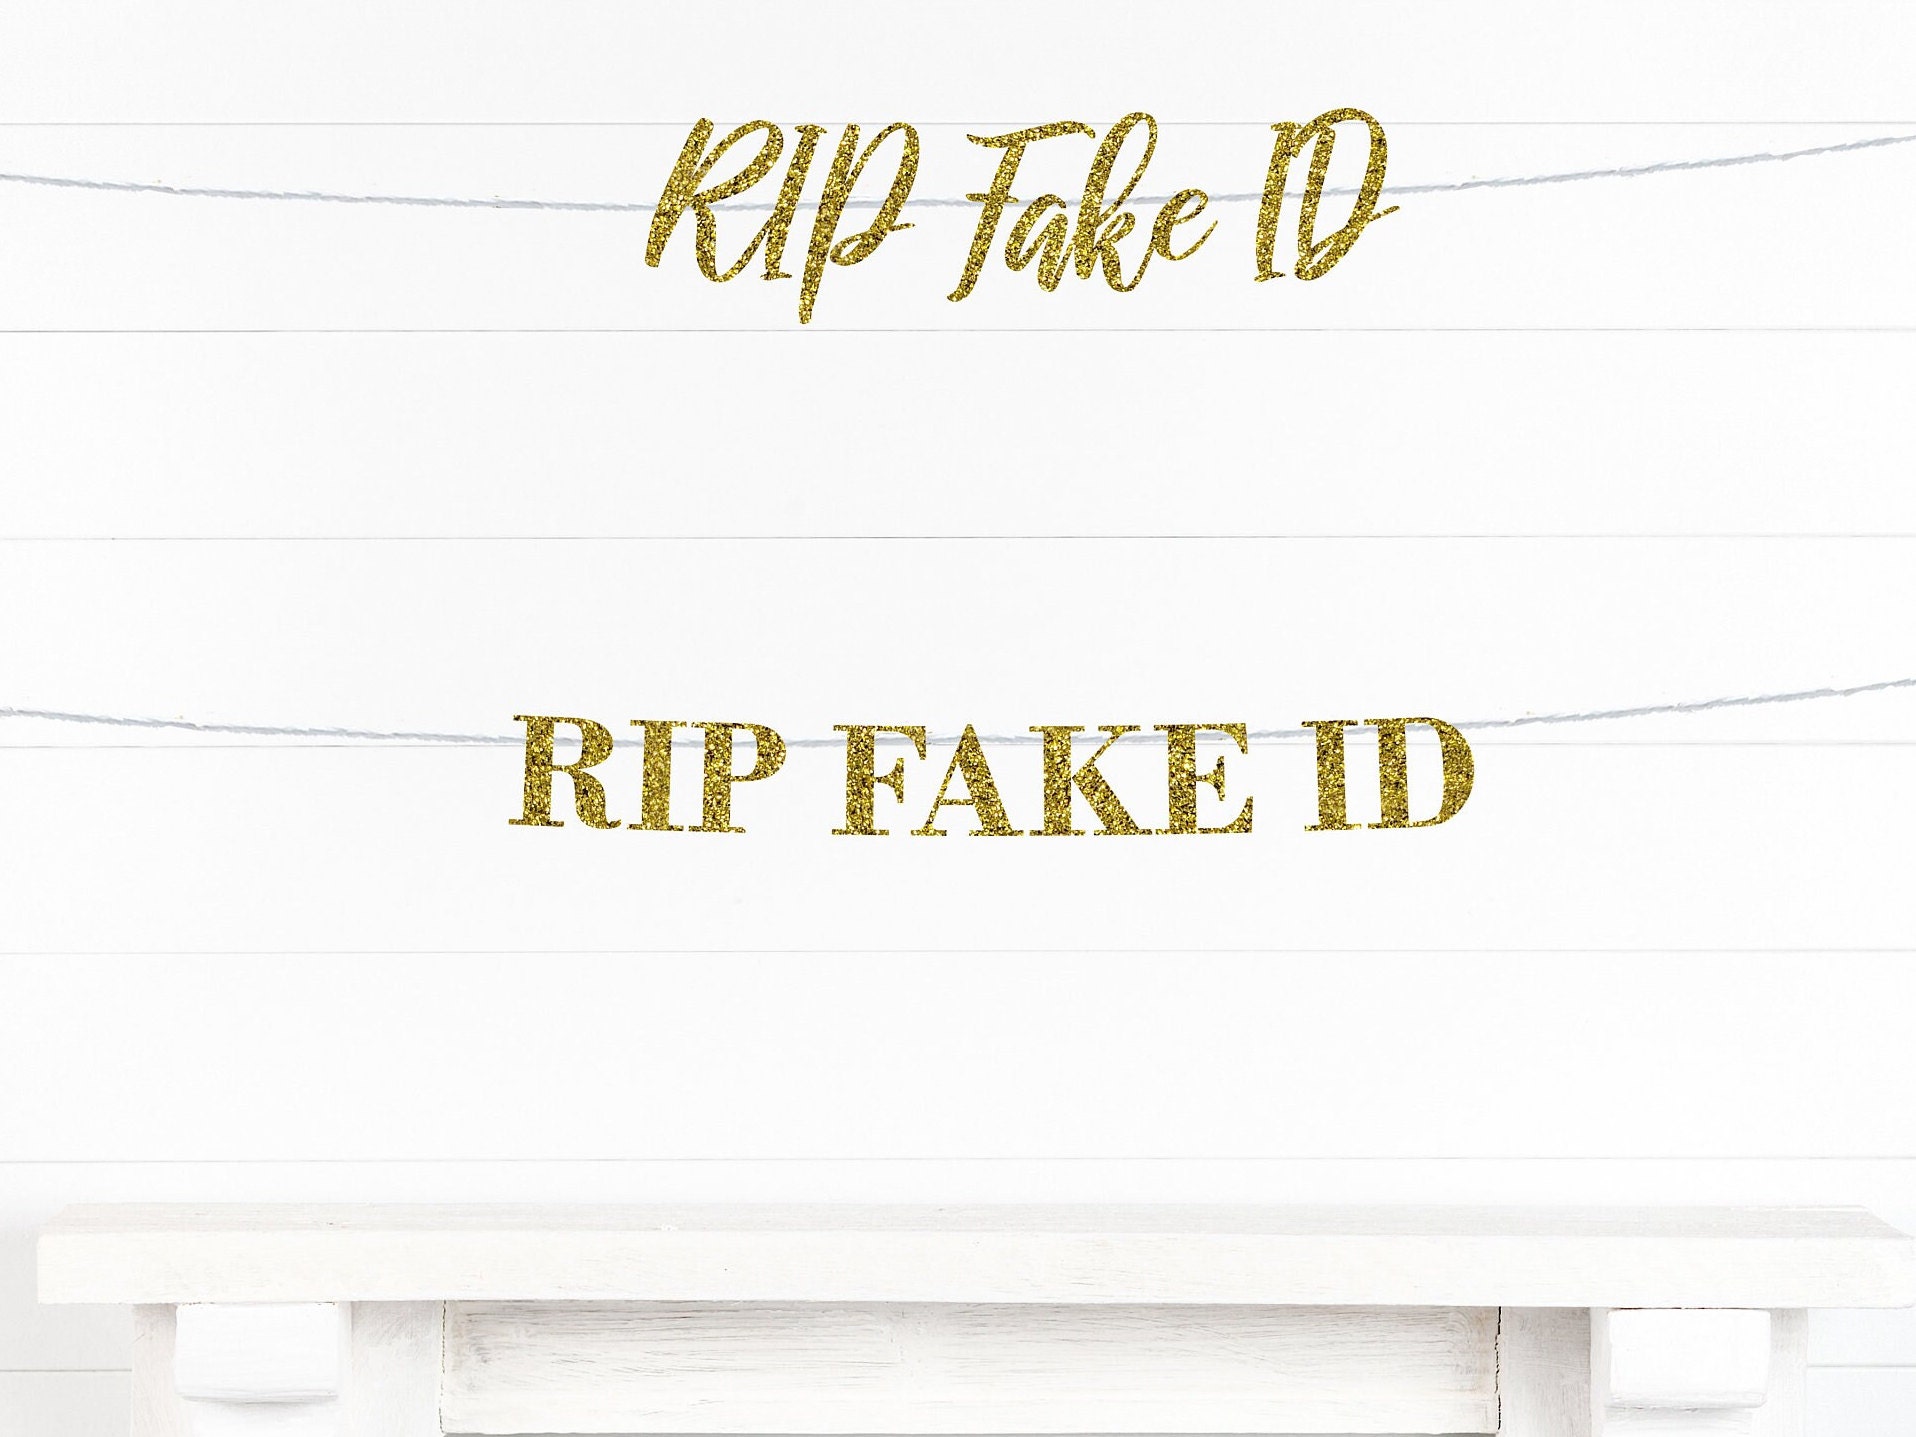 Latvia Fake Id Card - Buy Scannable Fake Id Online - Fake ID Website